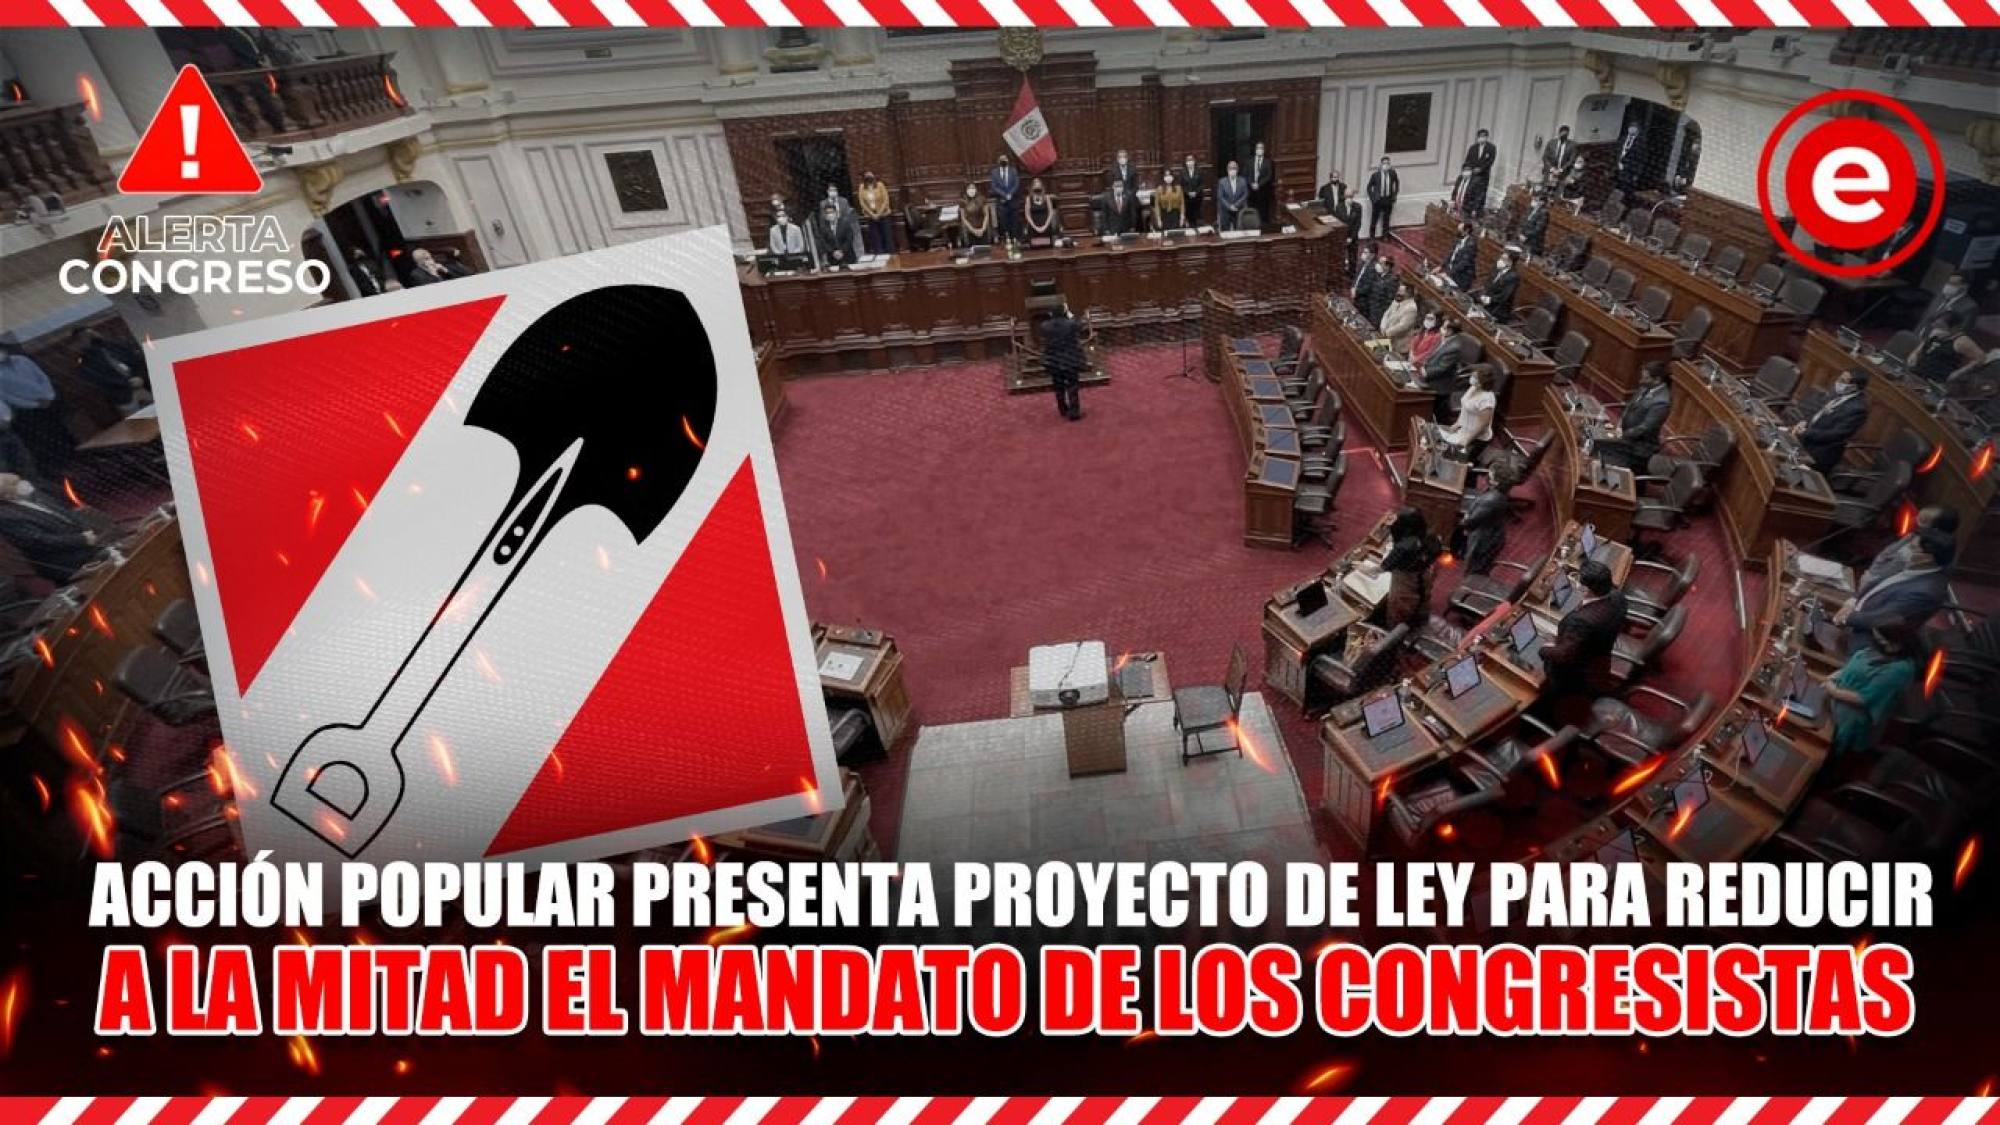 Alerta Congreso | Acción Popular presenta proyecto de ley para reducir a la mitad el mandato de congresistas, Epicentro TV